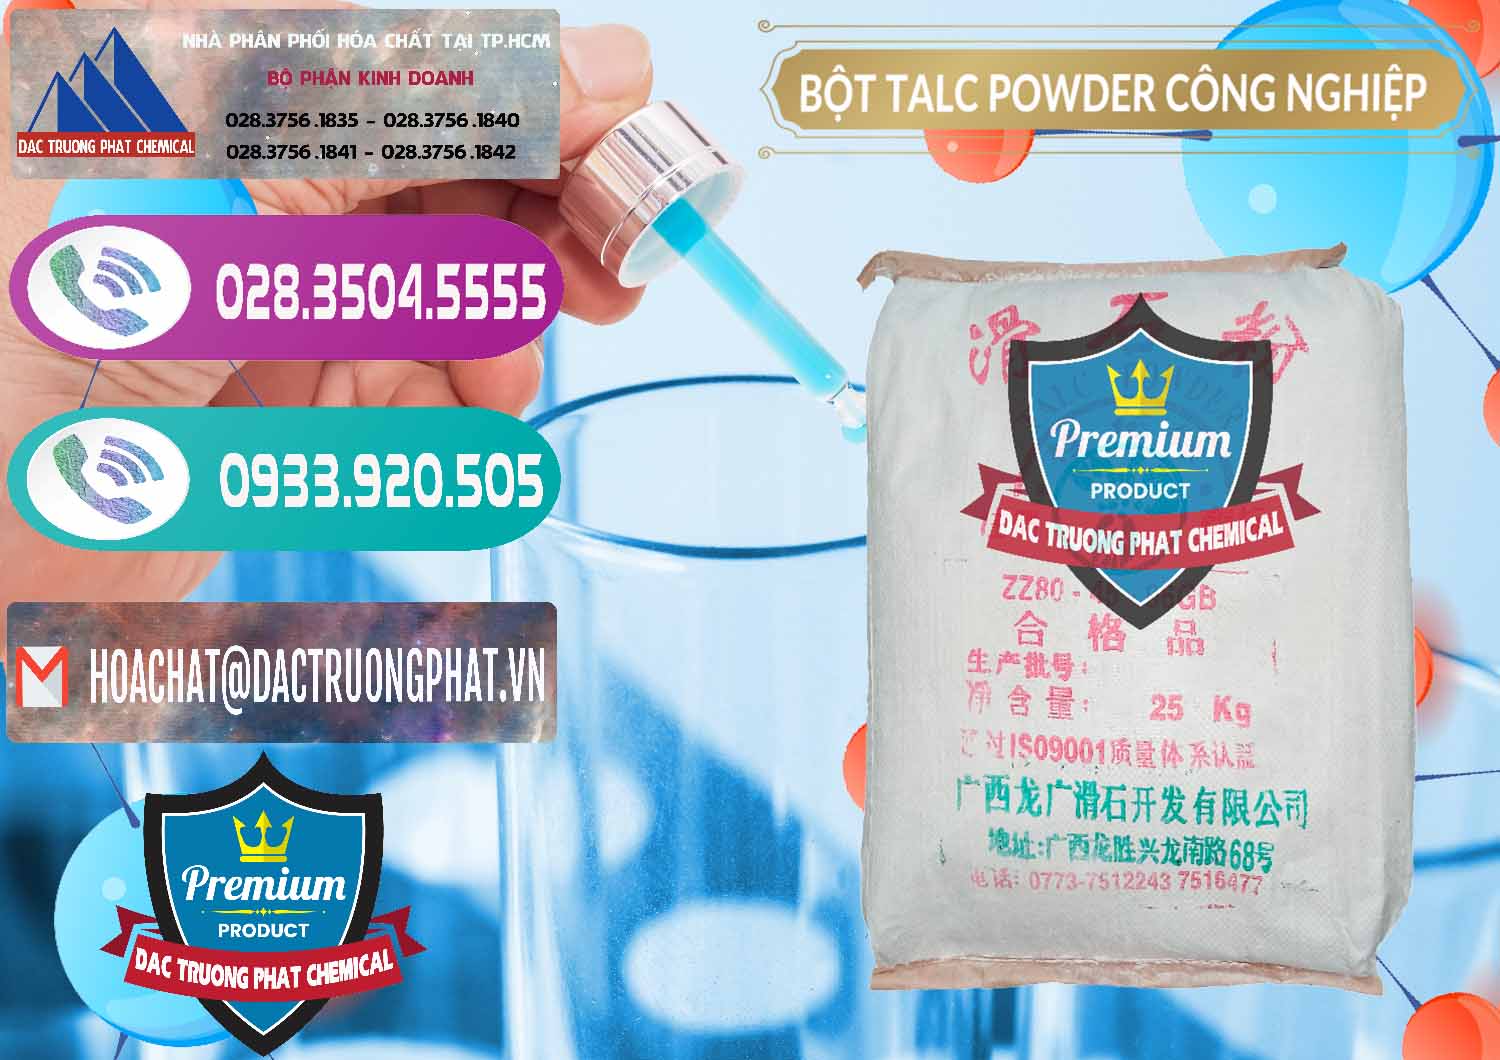 Cty chuyên bán và phân phối Bột Talc Powder Công Nghiệp Trung Quốc China - 0037 - Nhà phân phối và cung cấp hóa chất tại TP.HCM - hoachatxulynuoc.com